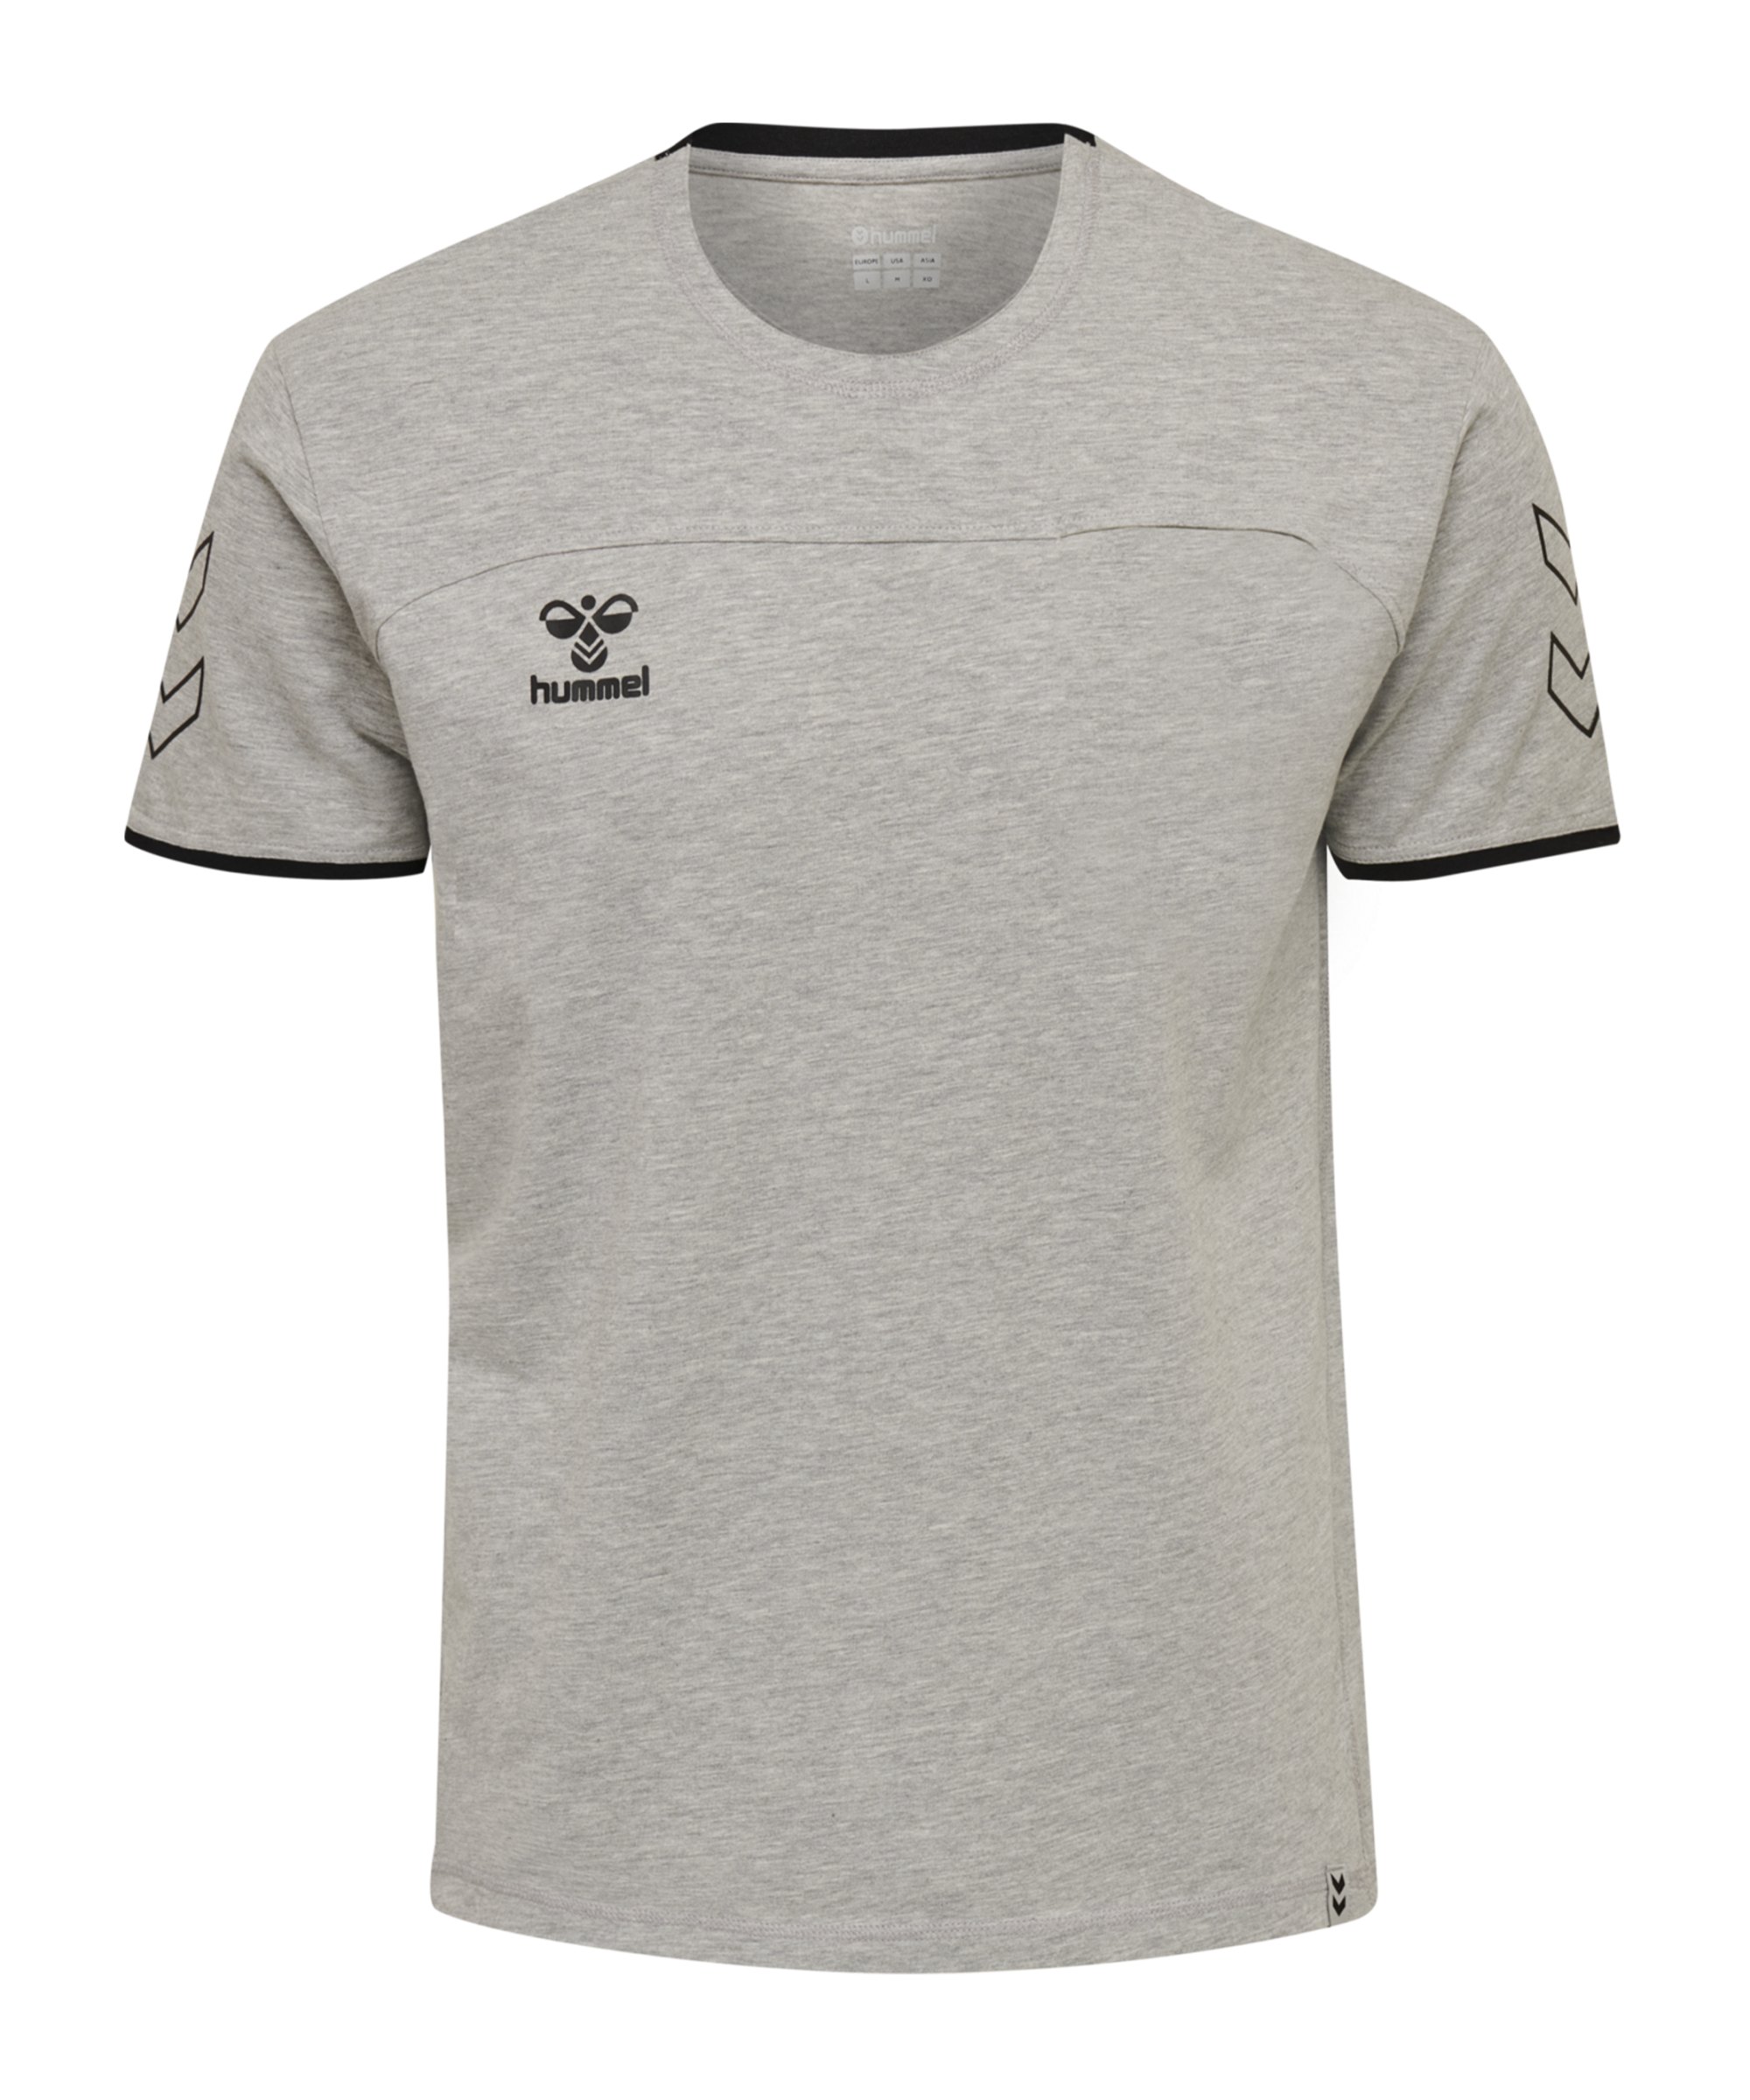 Hummel Cima T-Shirt Kids Grau F2006 - grau